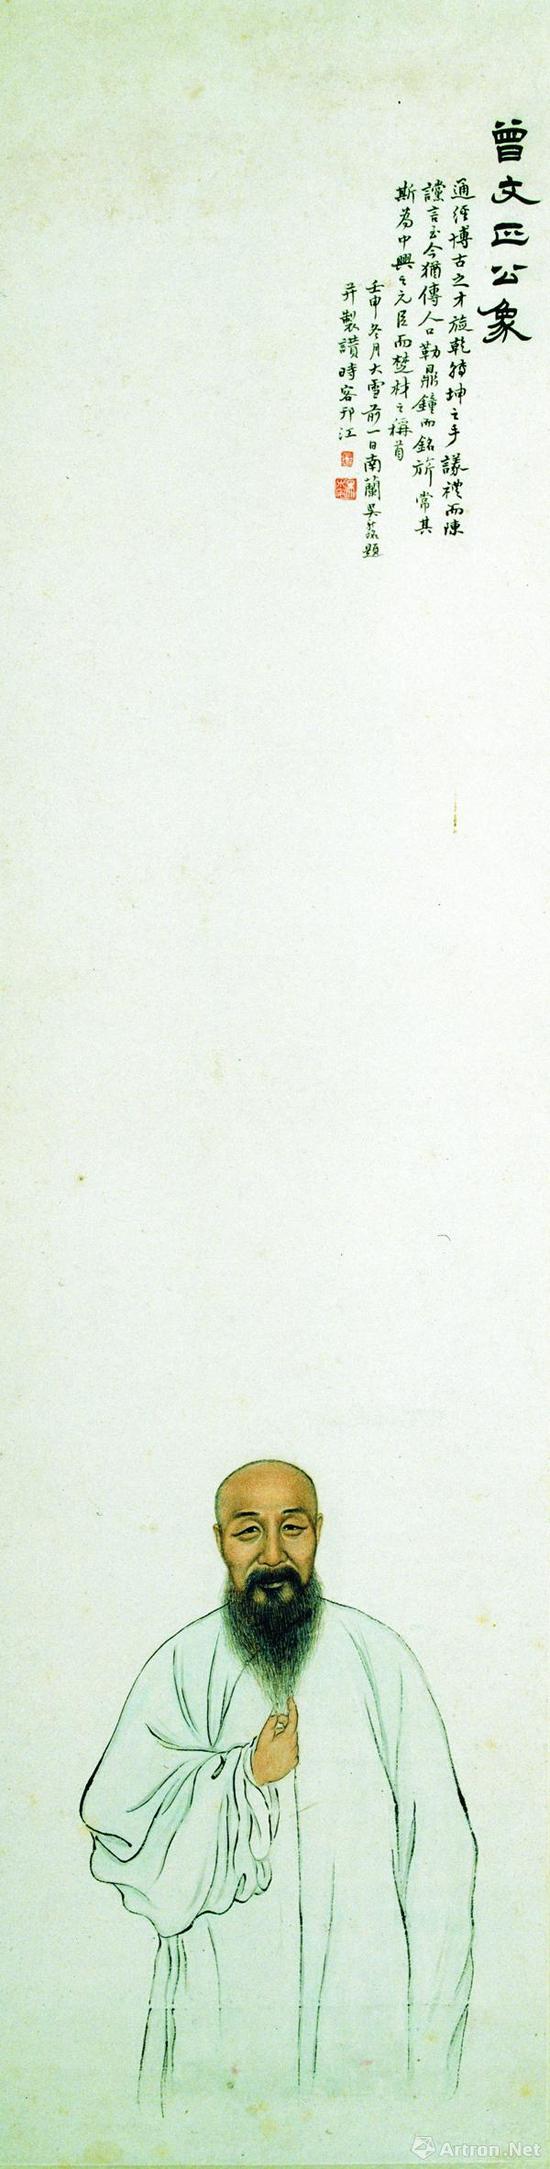 《曾文正公像》 清 吴新铭 纸本设色 121.2cmx31.6cm 南京博物院藏